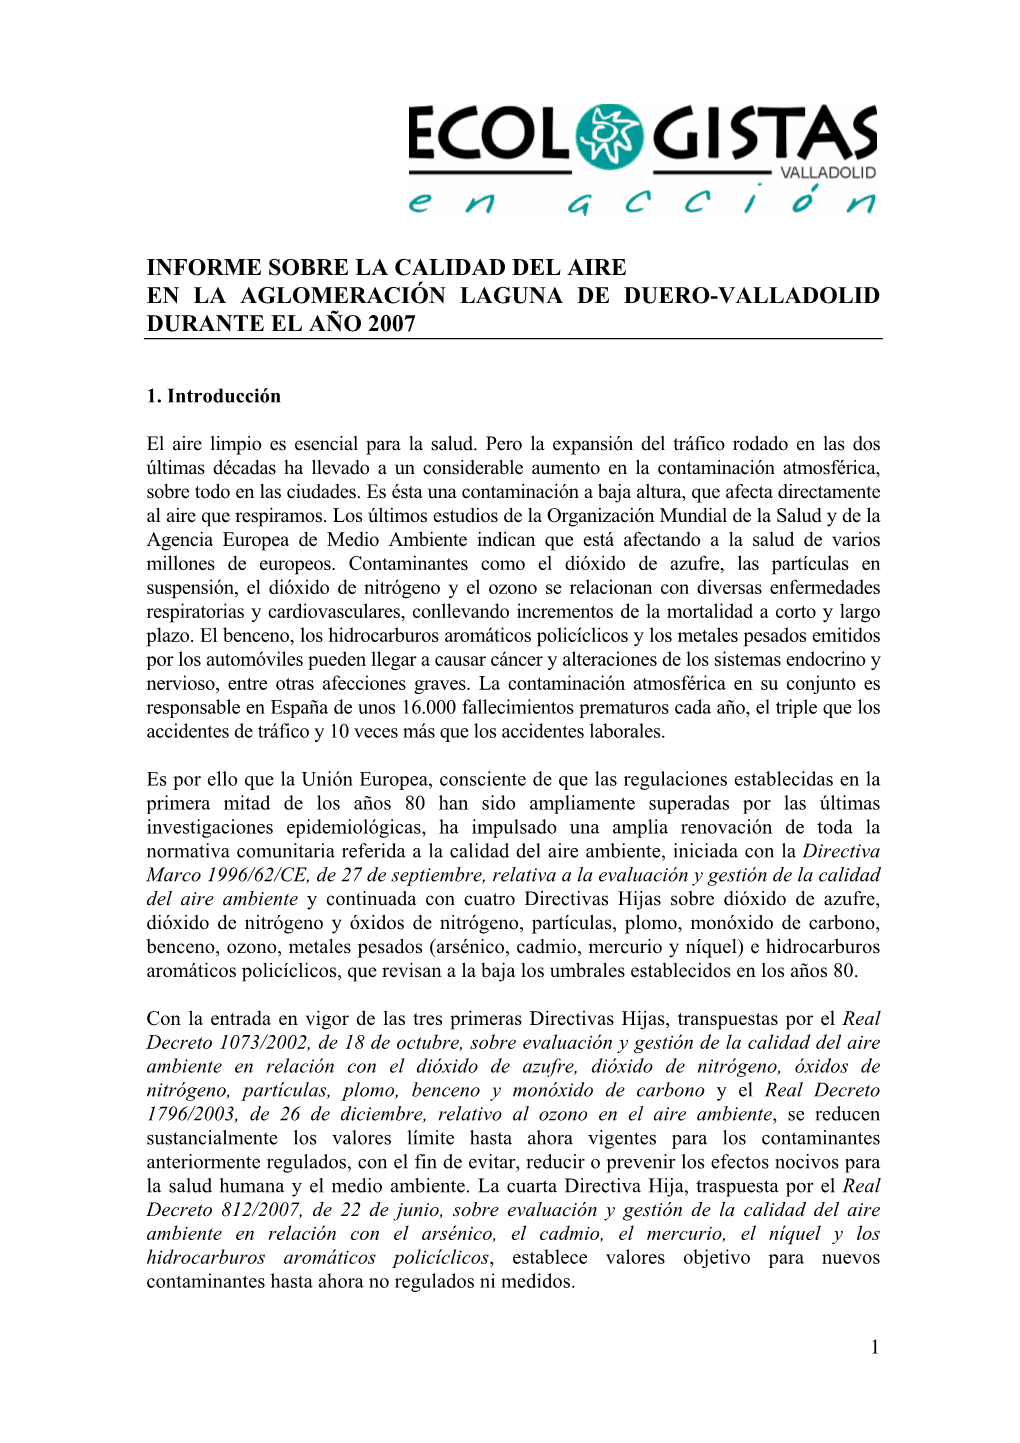 Informe Sobre La Calidad Del Aire En La Aglomeración Laguna De Duero-Valladolid Durante El Año 2007